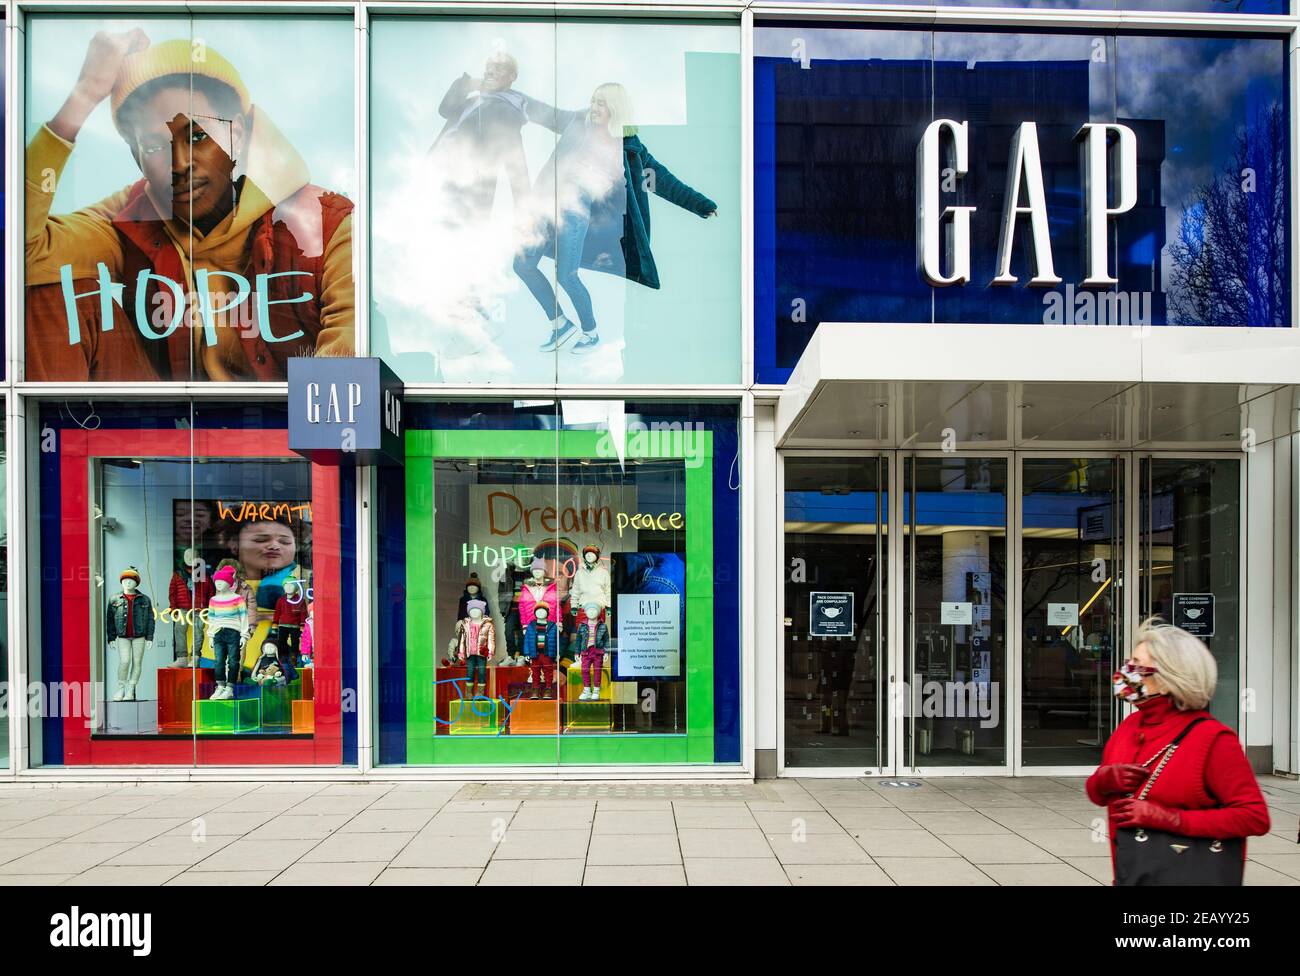 GAP-Flagship-Bekleidungsgeschäft, Oxford Street, London während der Sperrung von Covid 19 Pandemie Stockfoto